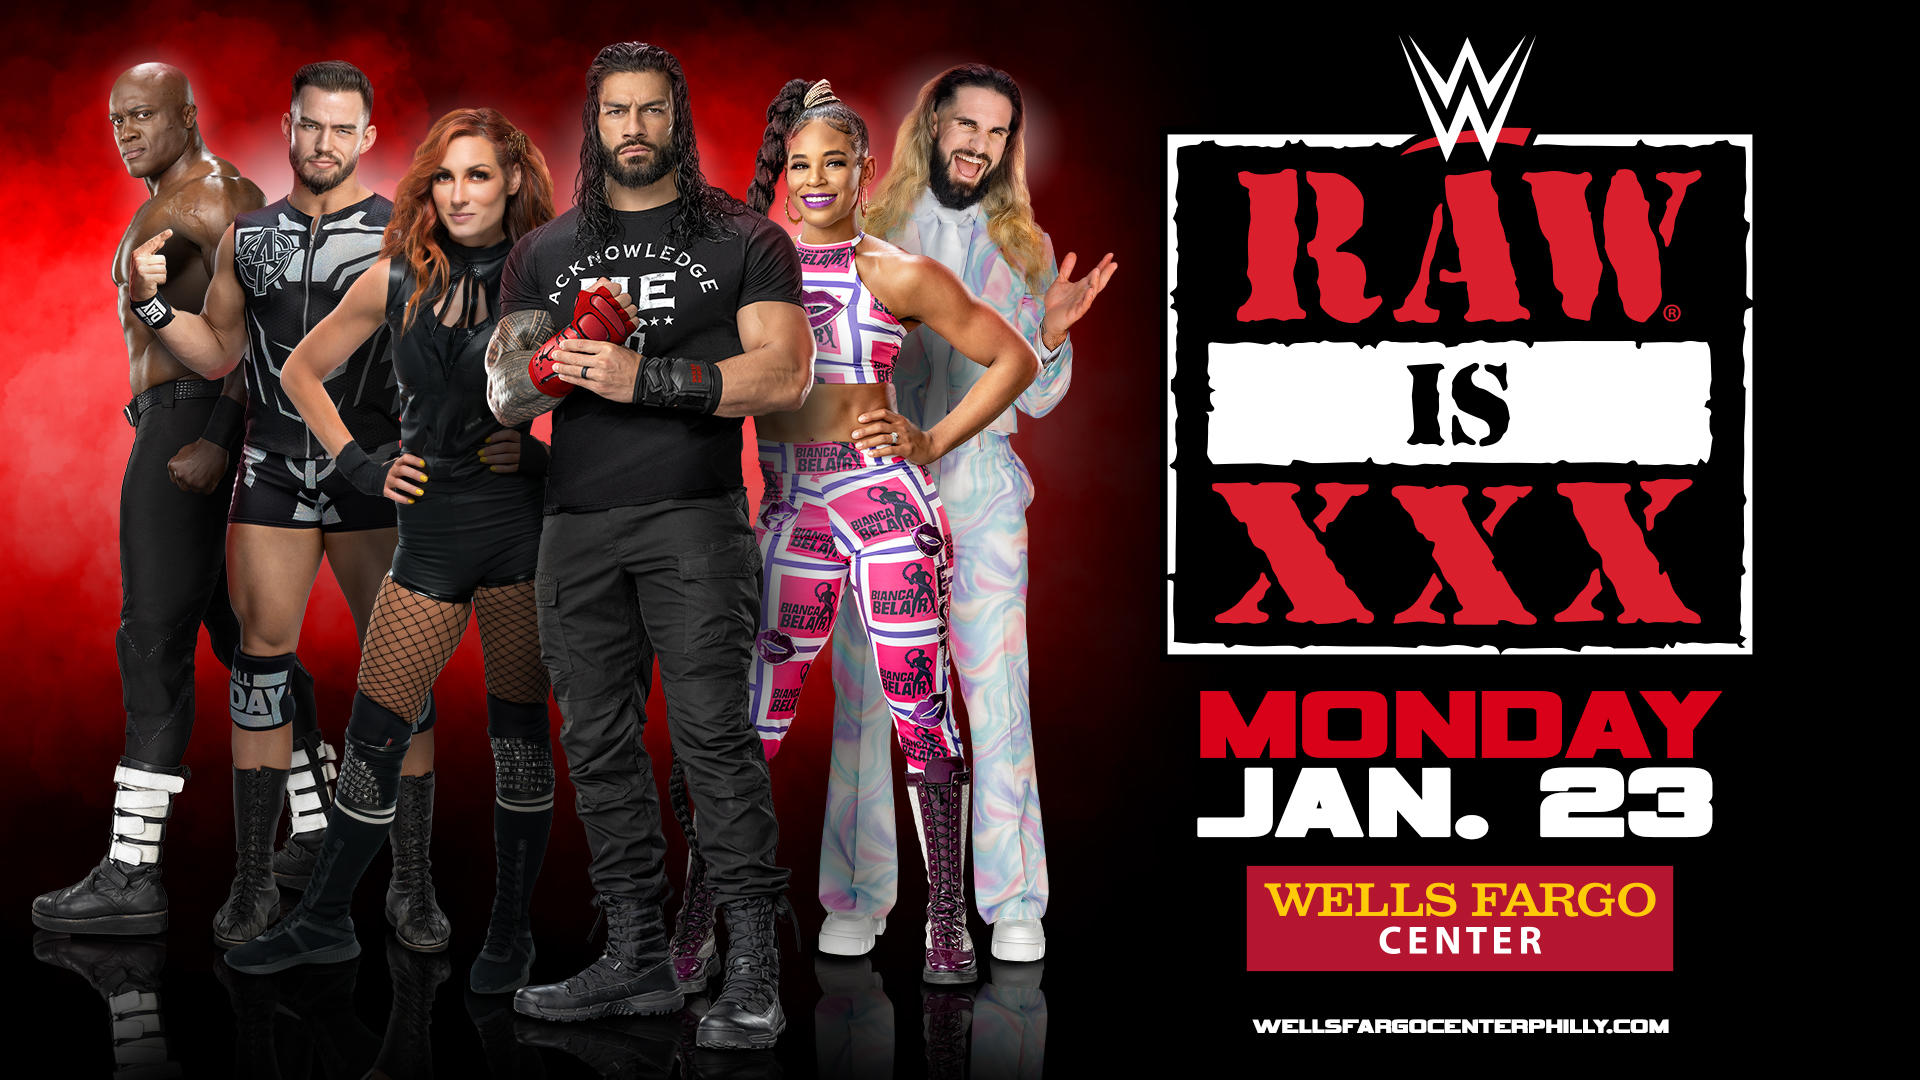 WWE Raw 'Raw is XXX'